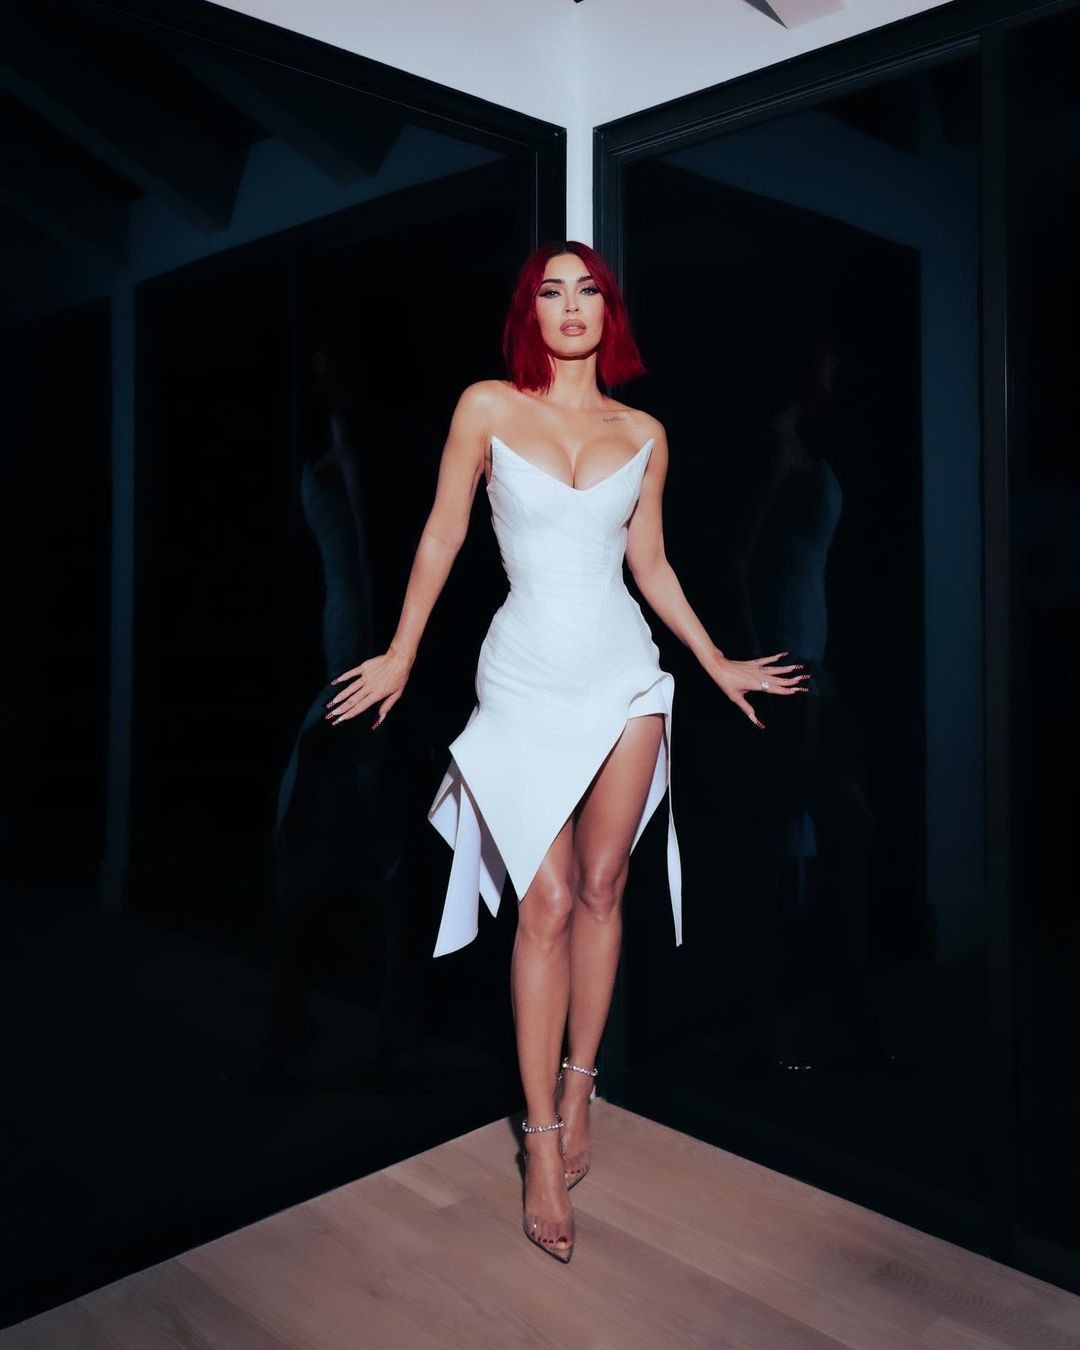 Megan Fox: Más sexy que nunca al lucir un ajustado vestido blanco que resalta sus curvas